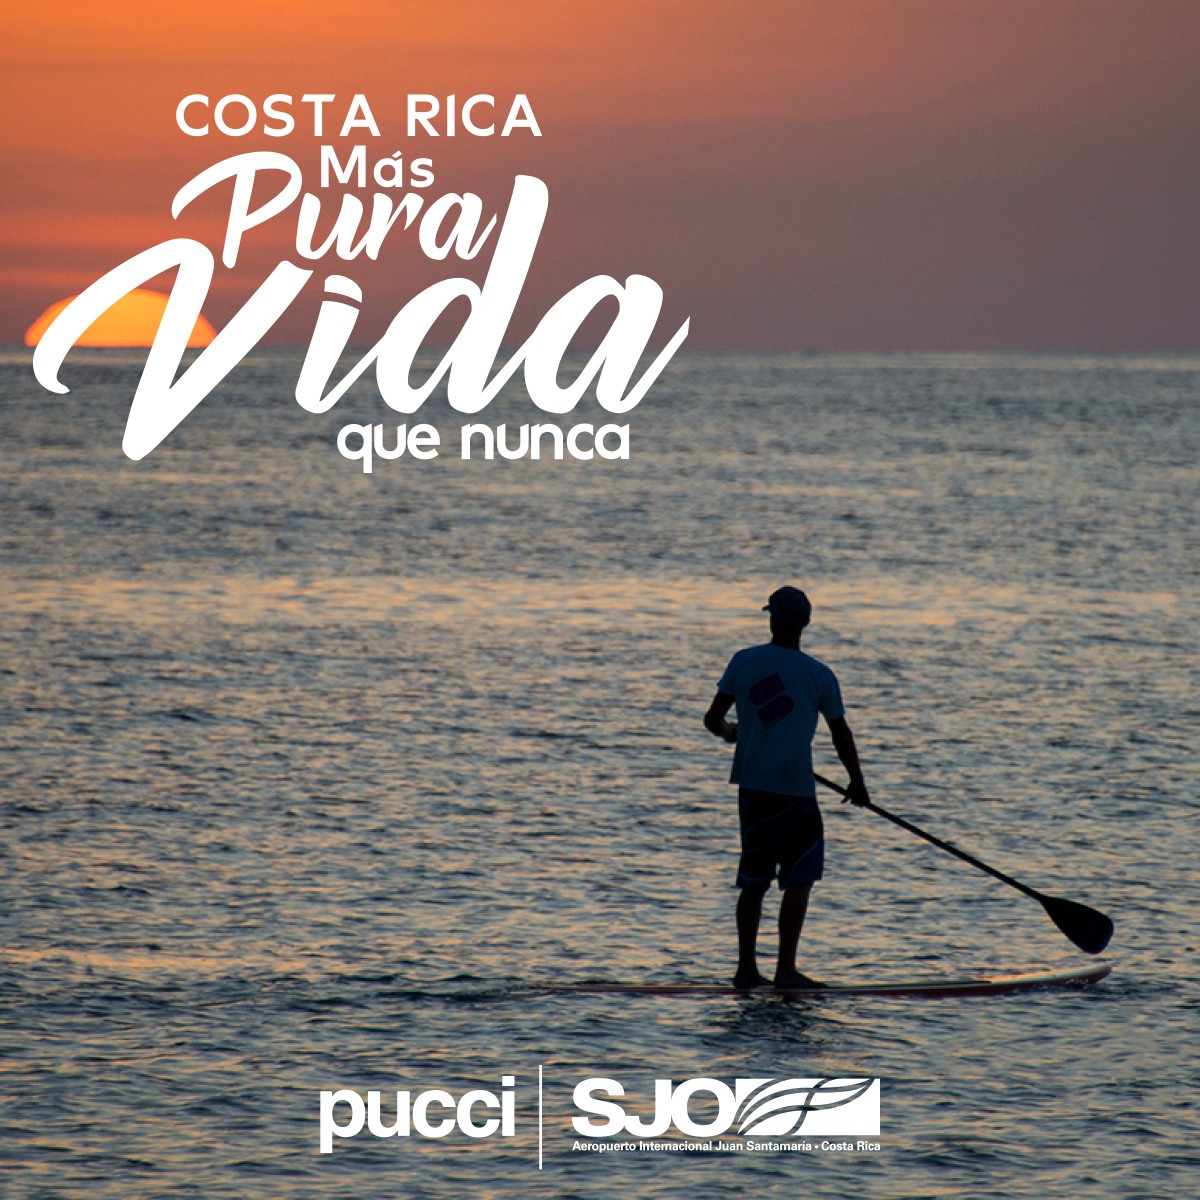 Aeris lanza campaña para promover regreso de turistas a Costa Rica